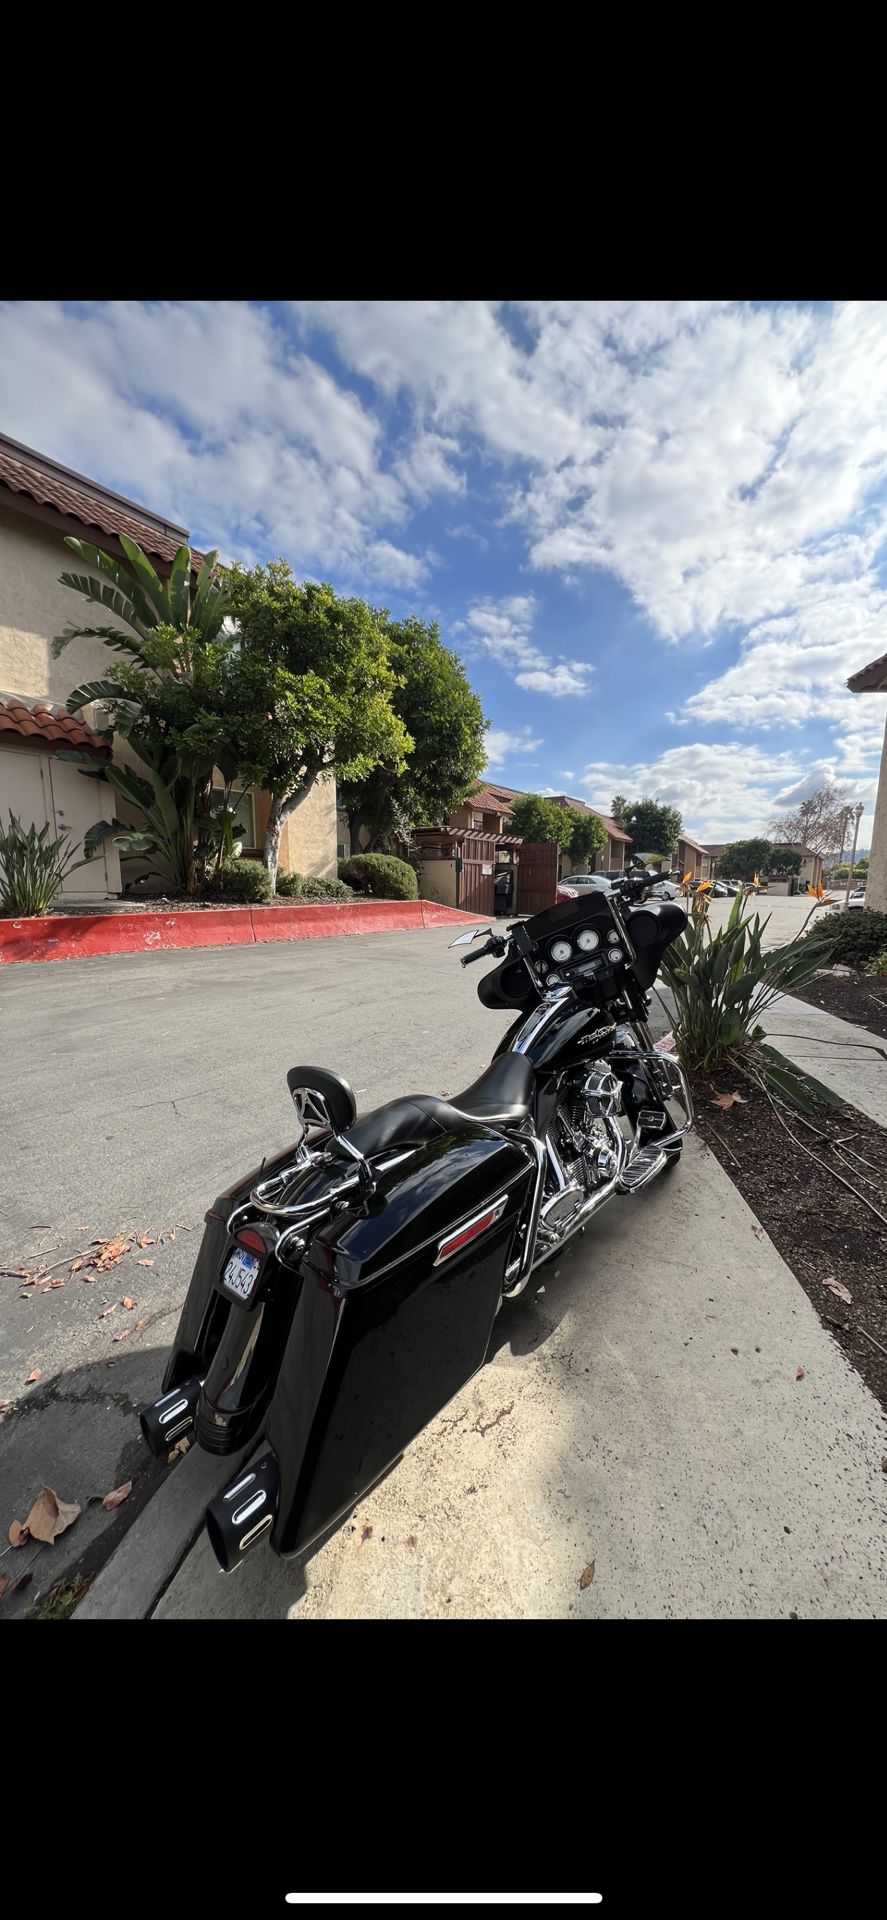 2006 Harley Davidson Street glide flhx for Sale in El Cajon, CA - OfferUp